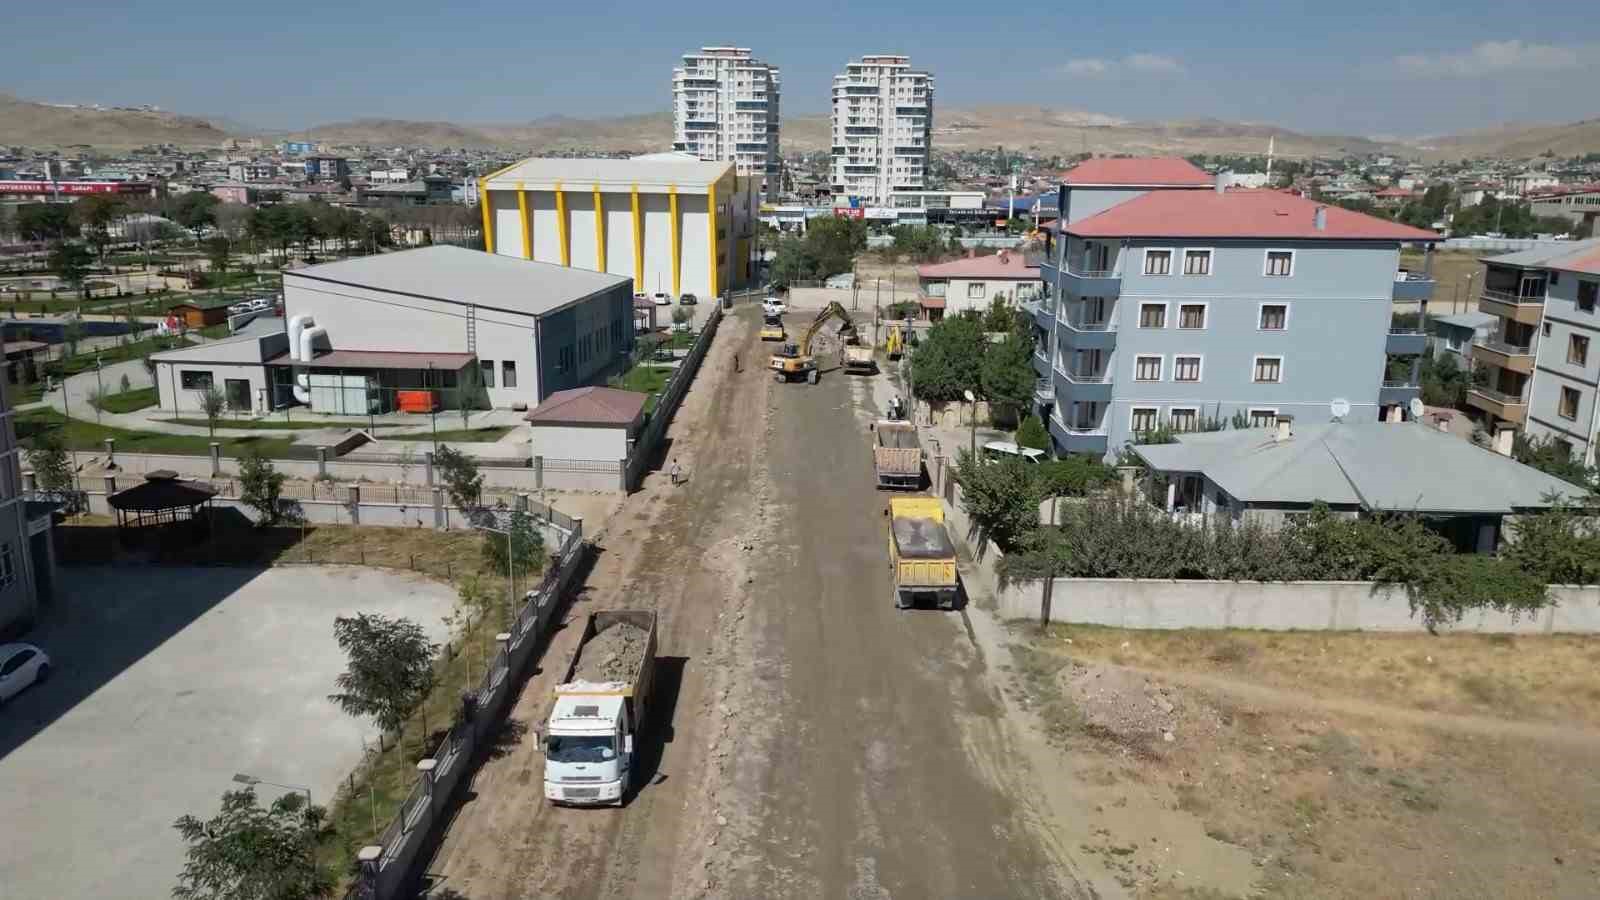 Tuşba Belediyesinden asfalt seferberliği